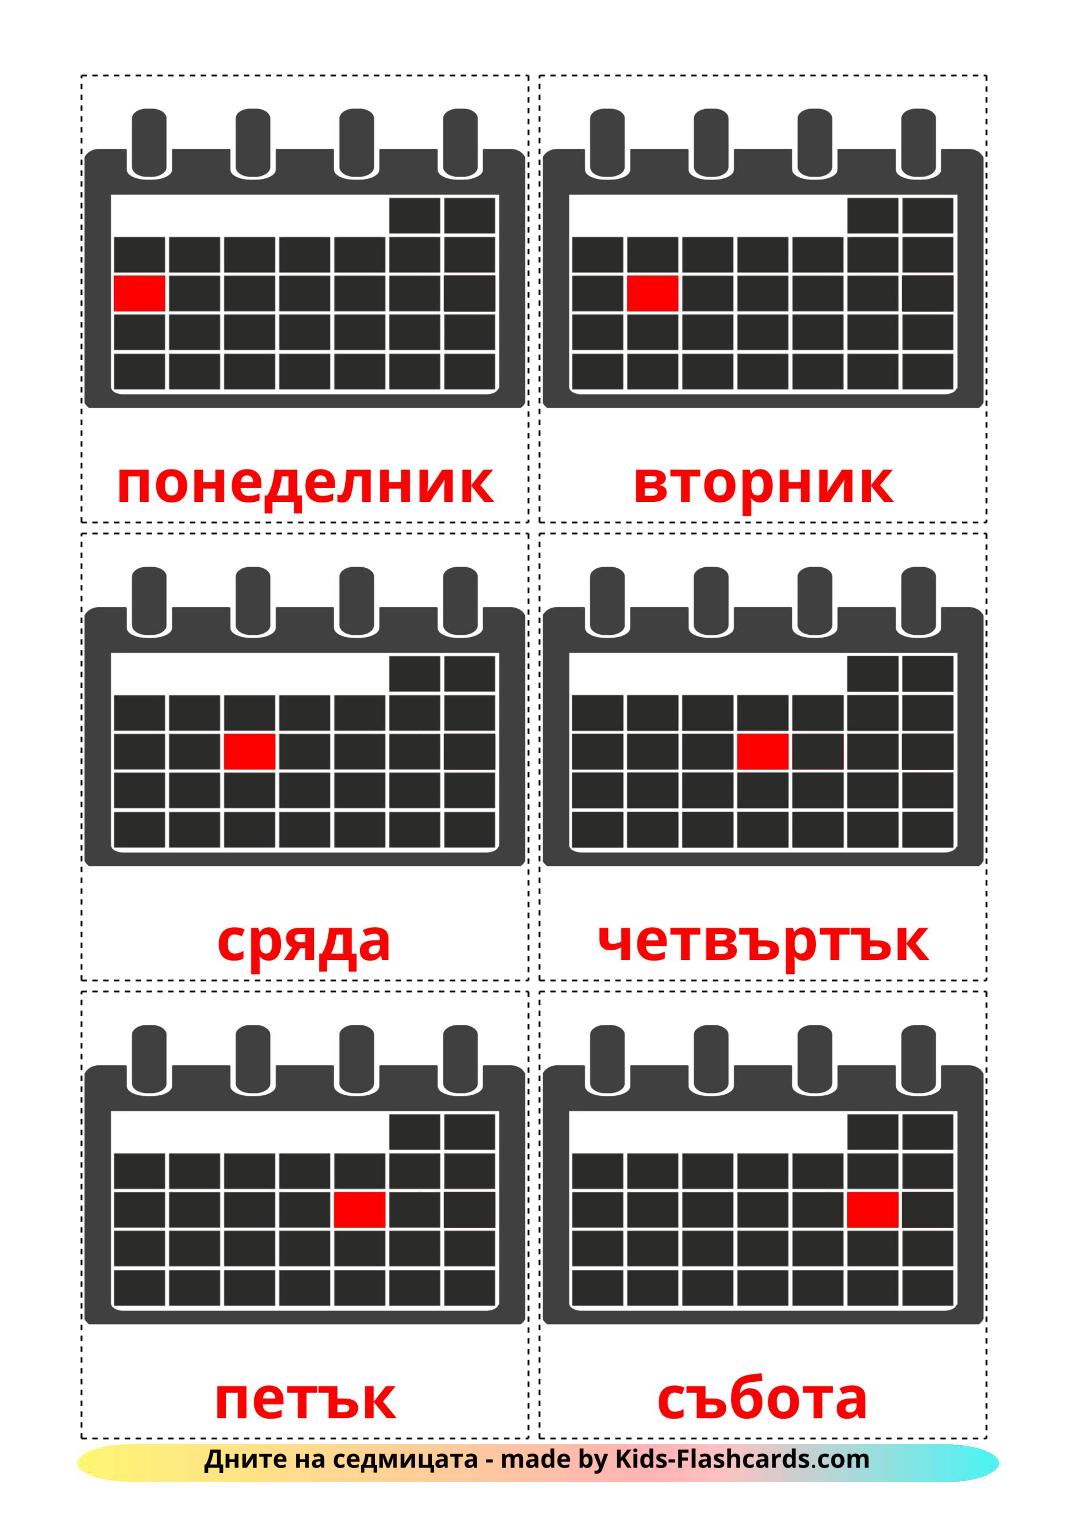 Días de la semana - 12 fichas de búlgaro para imprimir gratis 